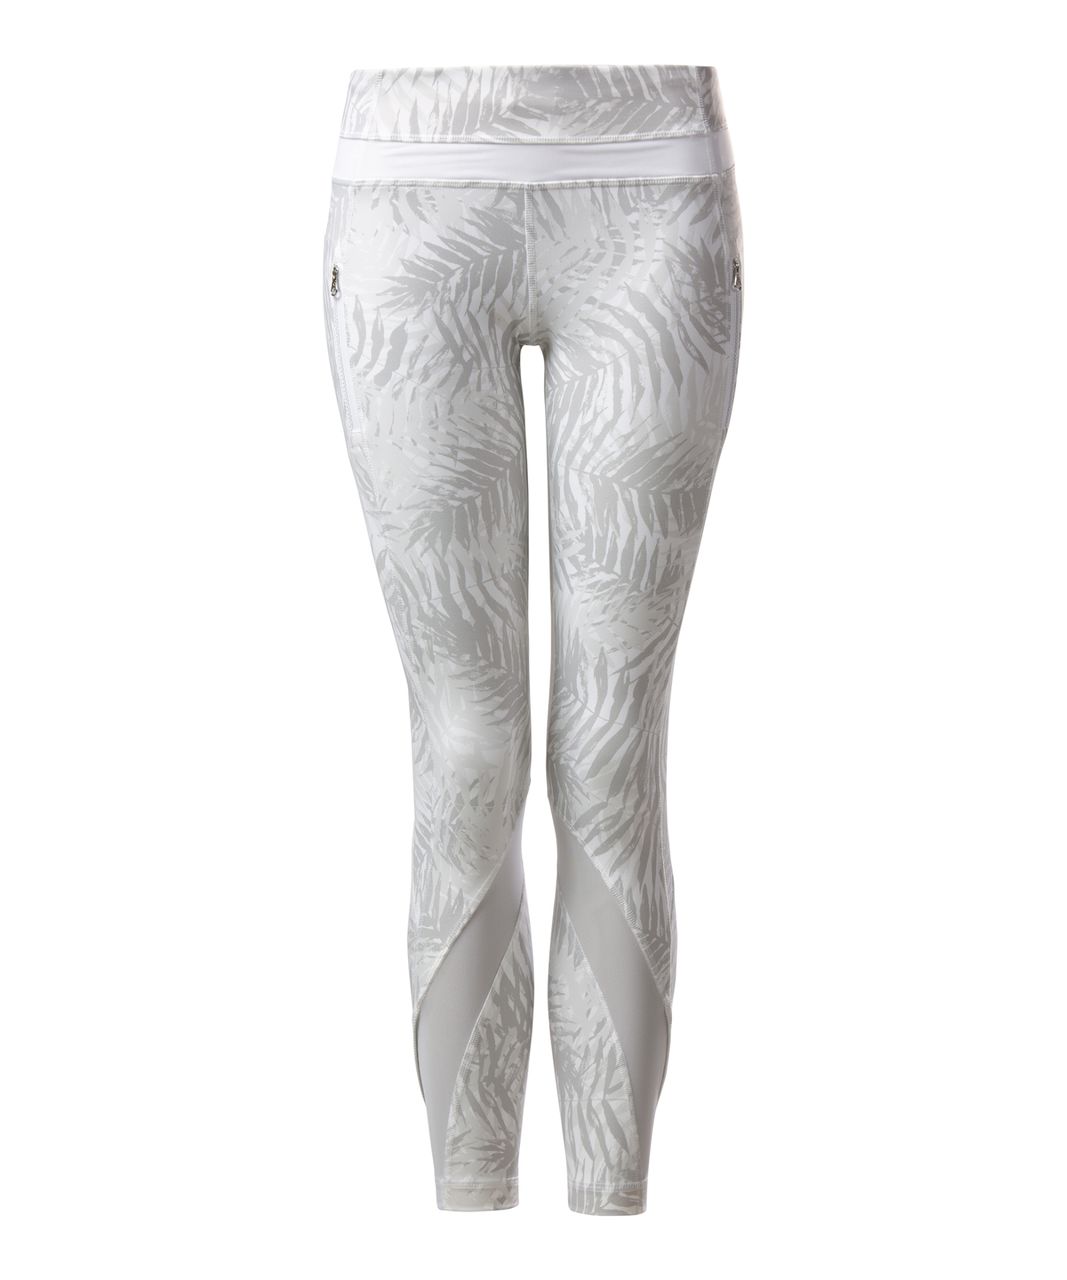 White Camo Leggings White Camouflage Crossover legging - Inspire Uplift